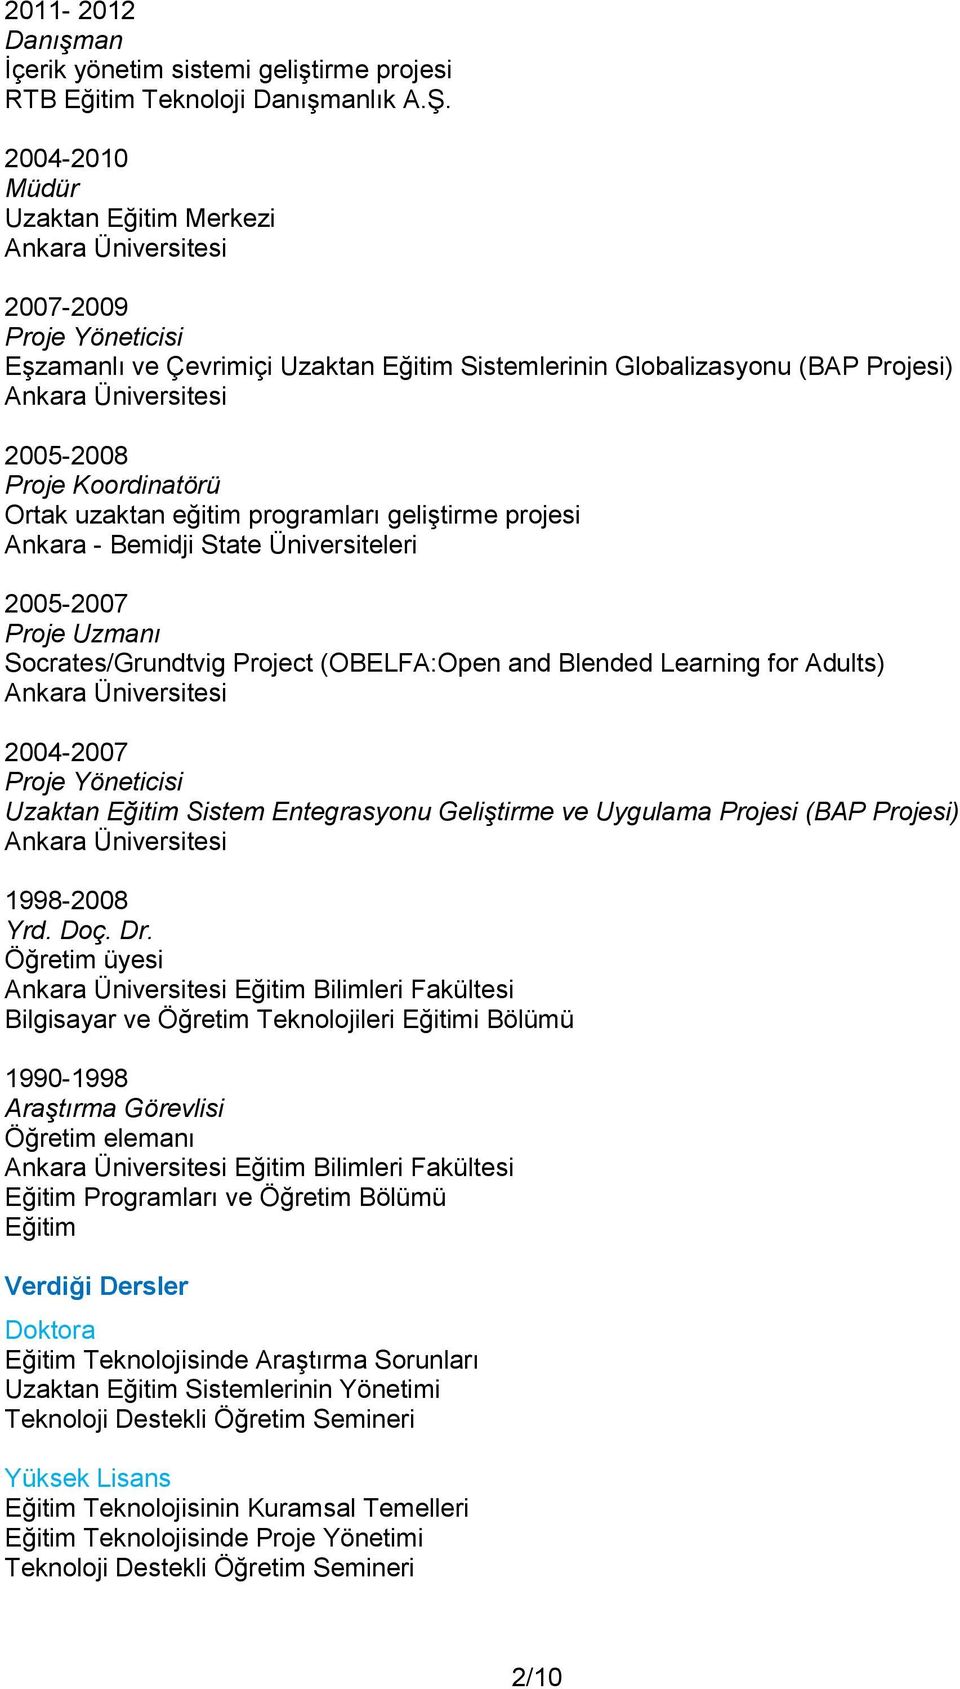 Proje Koordinatörü Ortak uzaktan eğitim programları geliştirme projesi Ankara - Bemidji State Üniversiteleri 2005-2007 Proje Uzmanı Socrates/Grundtvig Project (OBELFA:Open and Blended Learning for